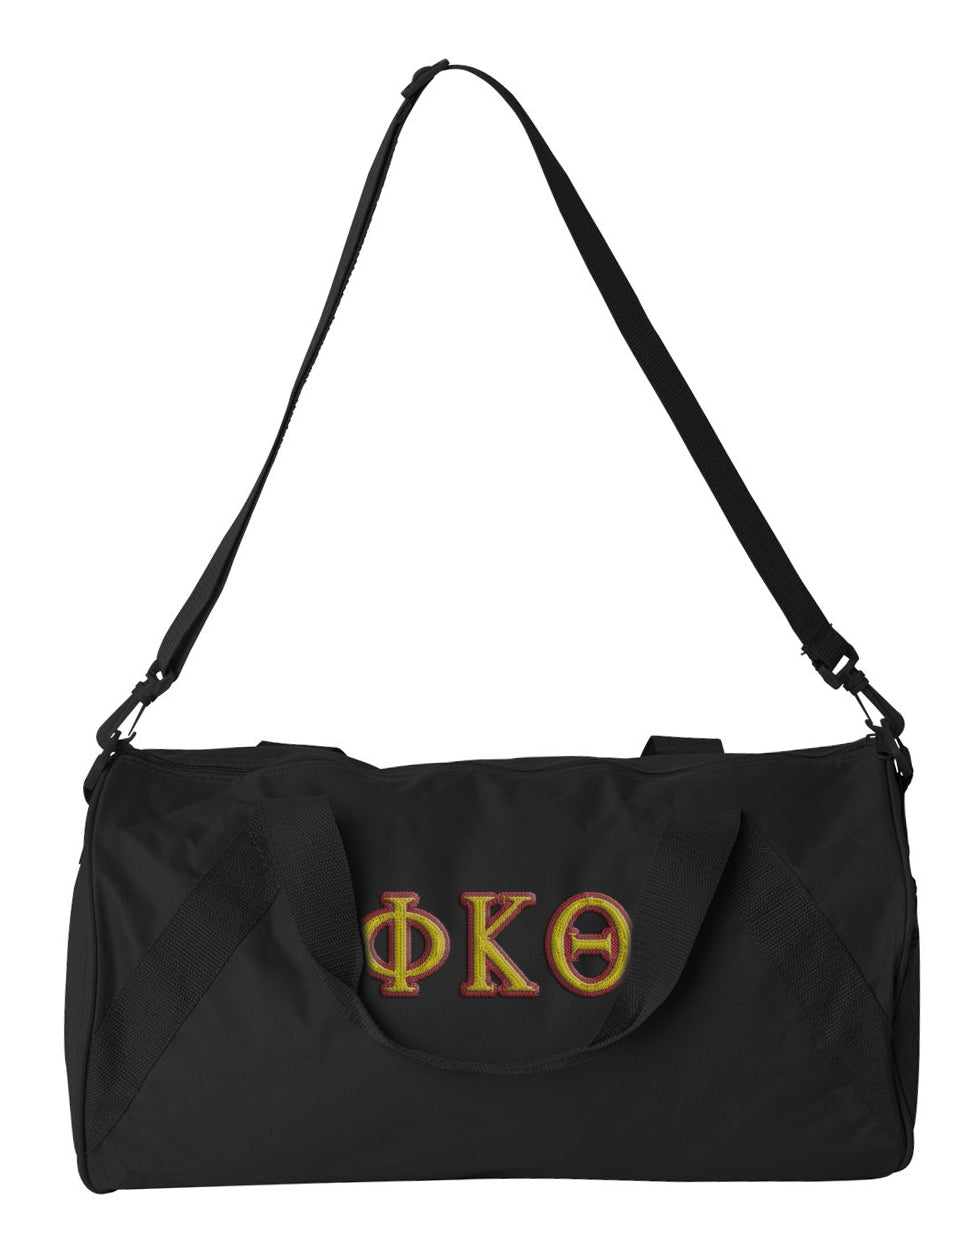 Phi Kappa Theta Embroidered Duffel Bag